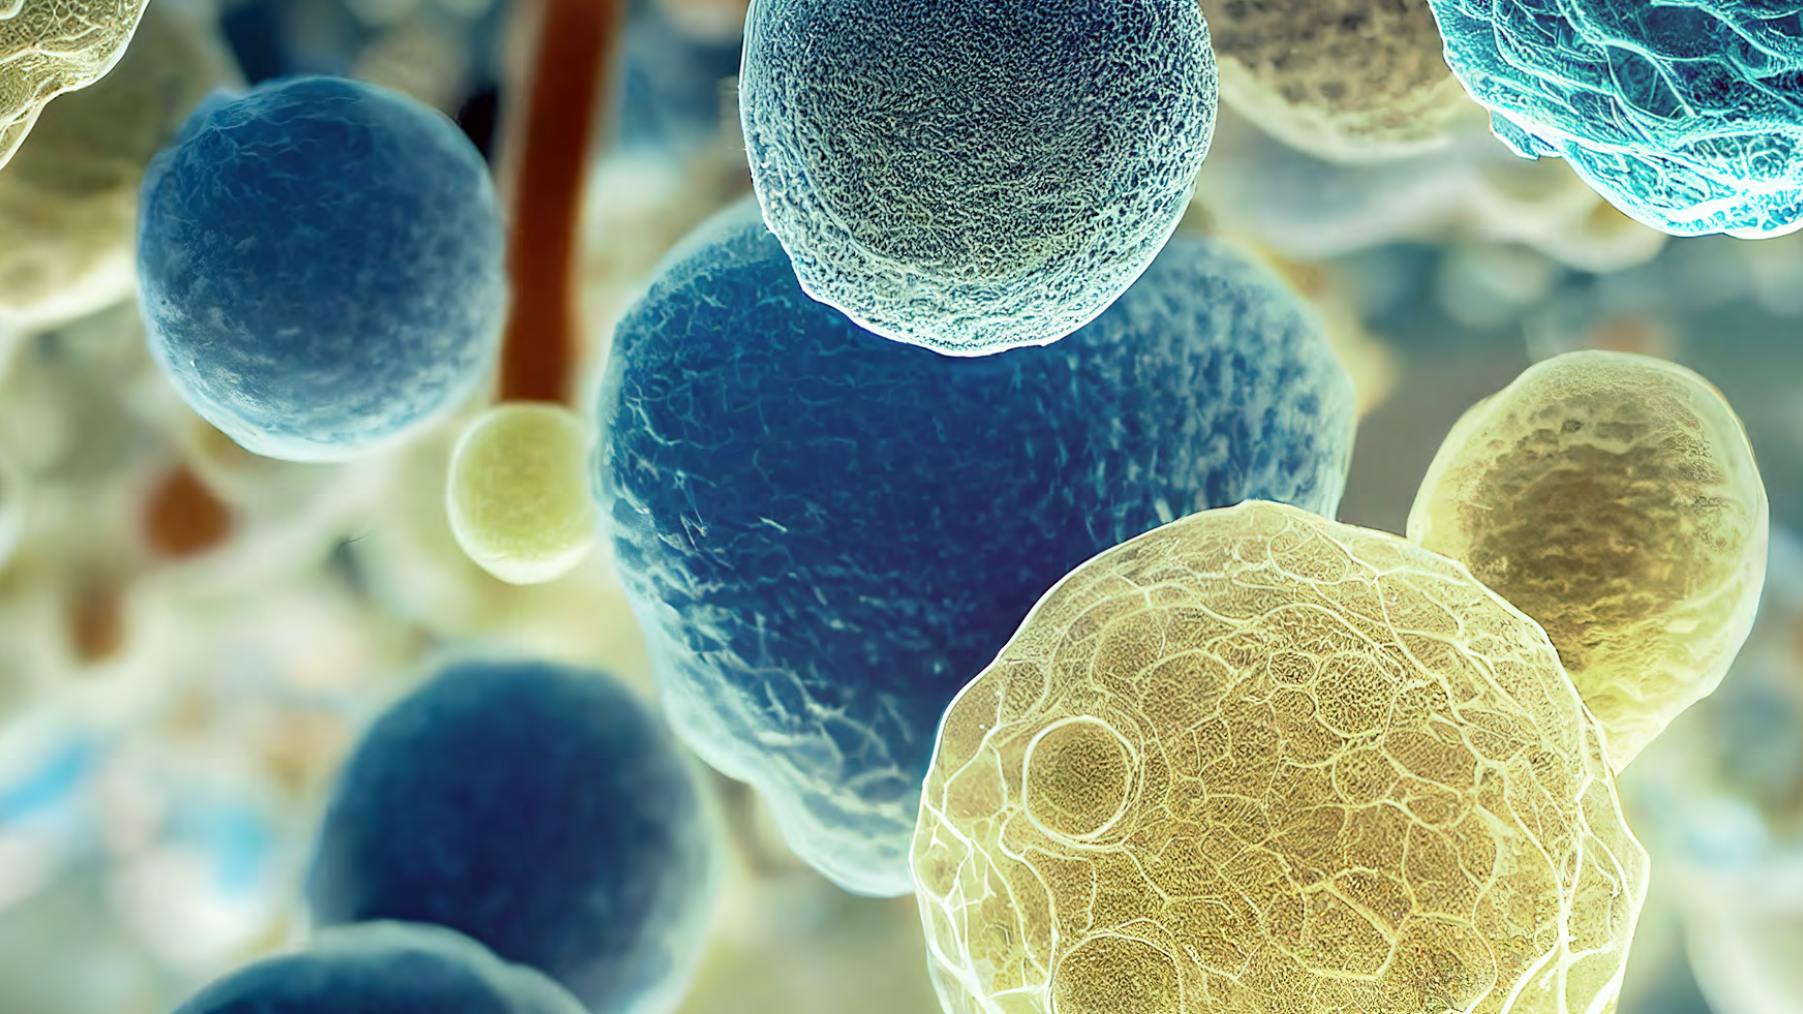 Fotografia al microsfopio di batteri gialli e blu